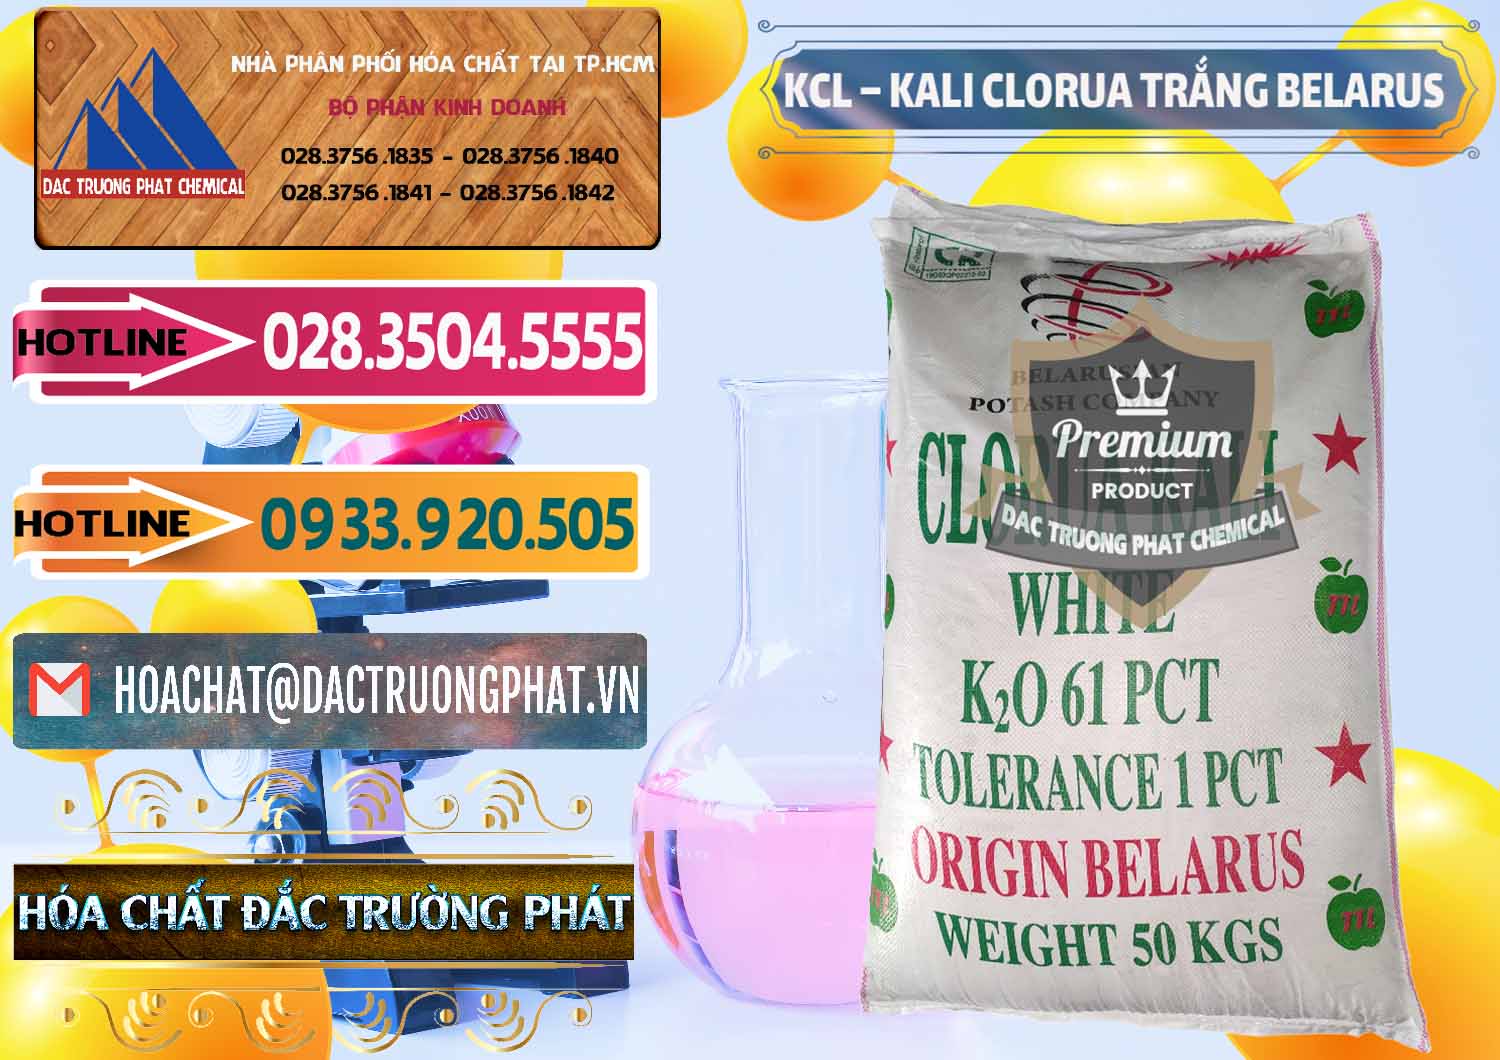 Chuyên kinh doanh _ bán KCL – Kali Clorua Trắng Belarus - 0085 - Cty phân phối - cung cấp hóa chất tại TP.HCM - dactruongphat.vn